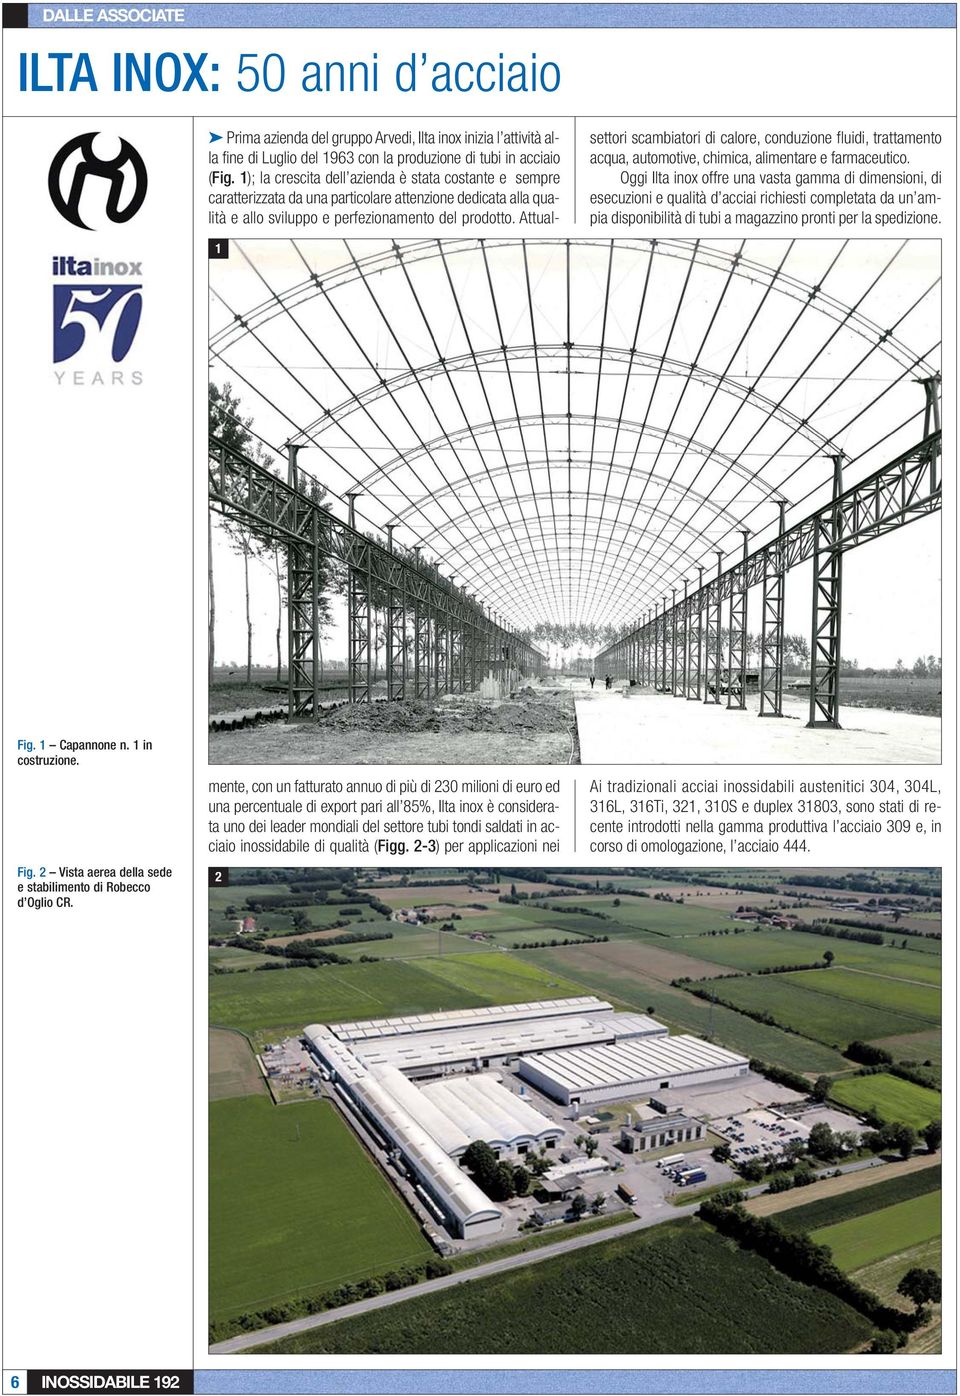 1 in costruzione. Fig. 2 Vista aerea della sede e stabilimento di Robecco d Oglio CR.